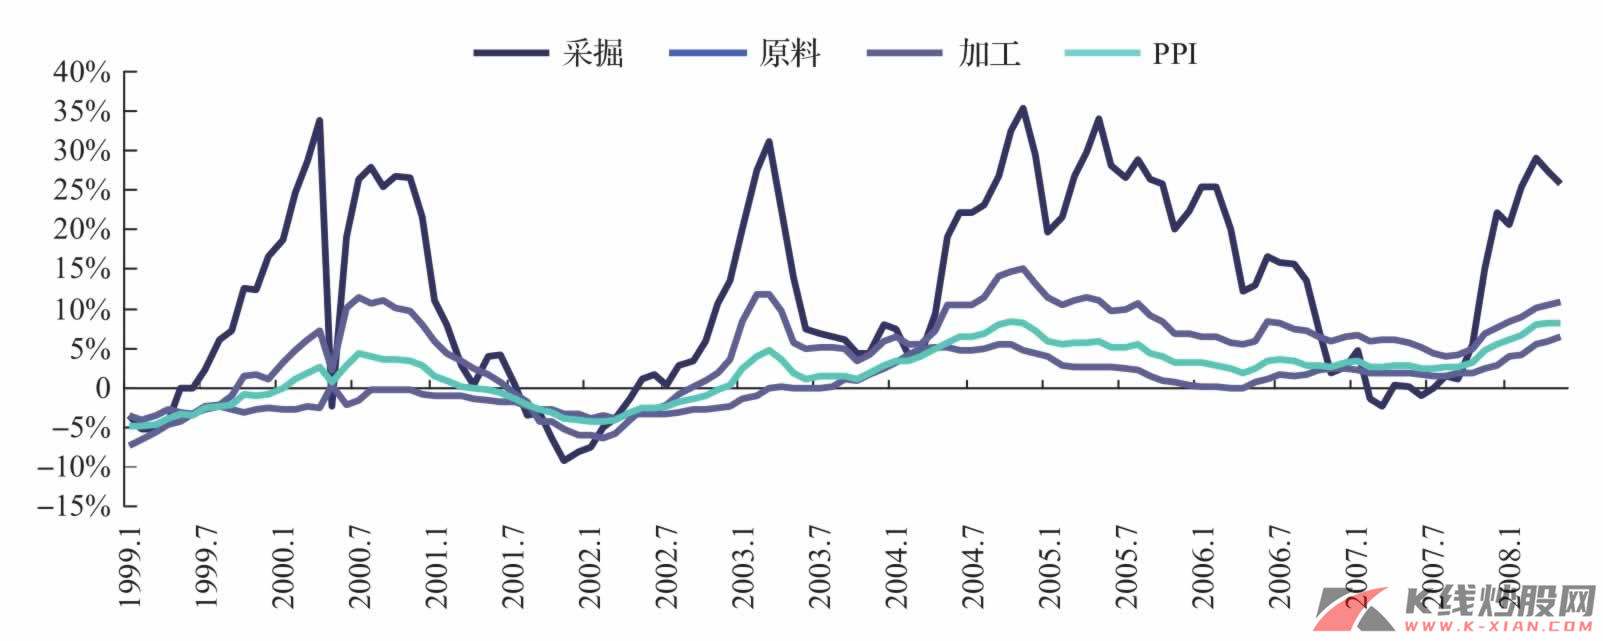 中国PPI及采掘、原料、加工物价指数波动